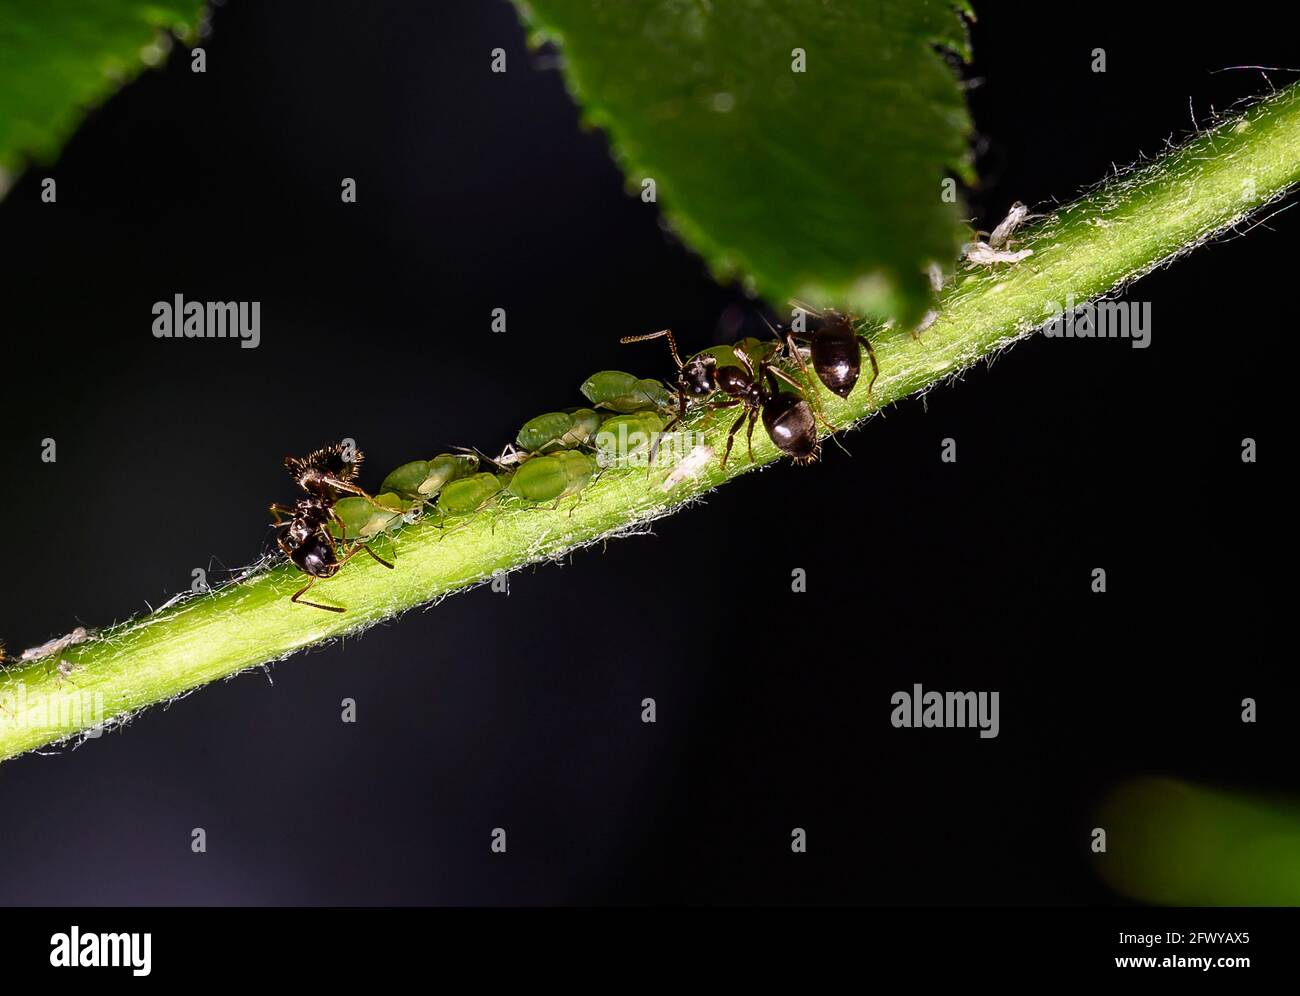 Ameisen am kirschbaum blattläuse und Blattläuse am